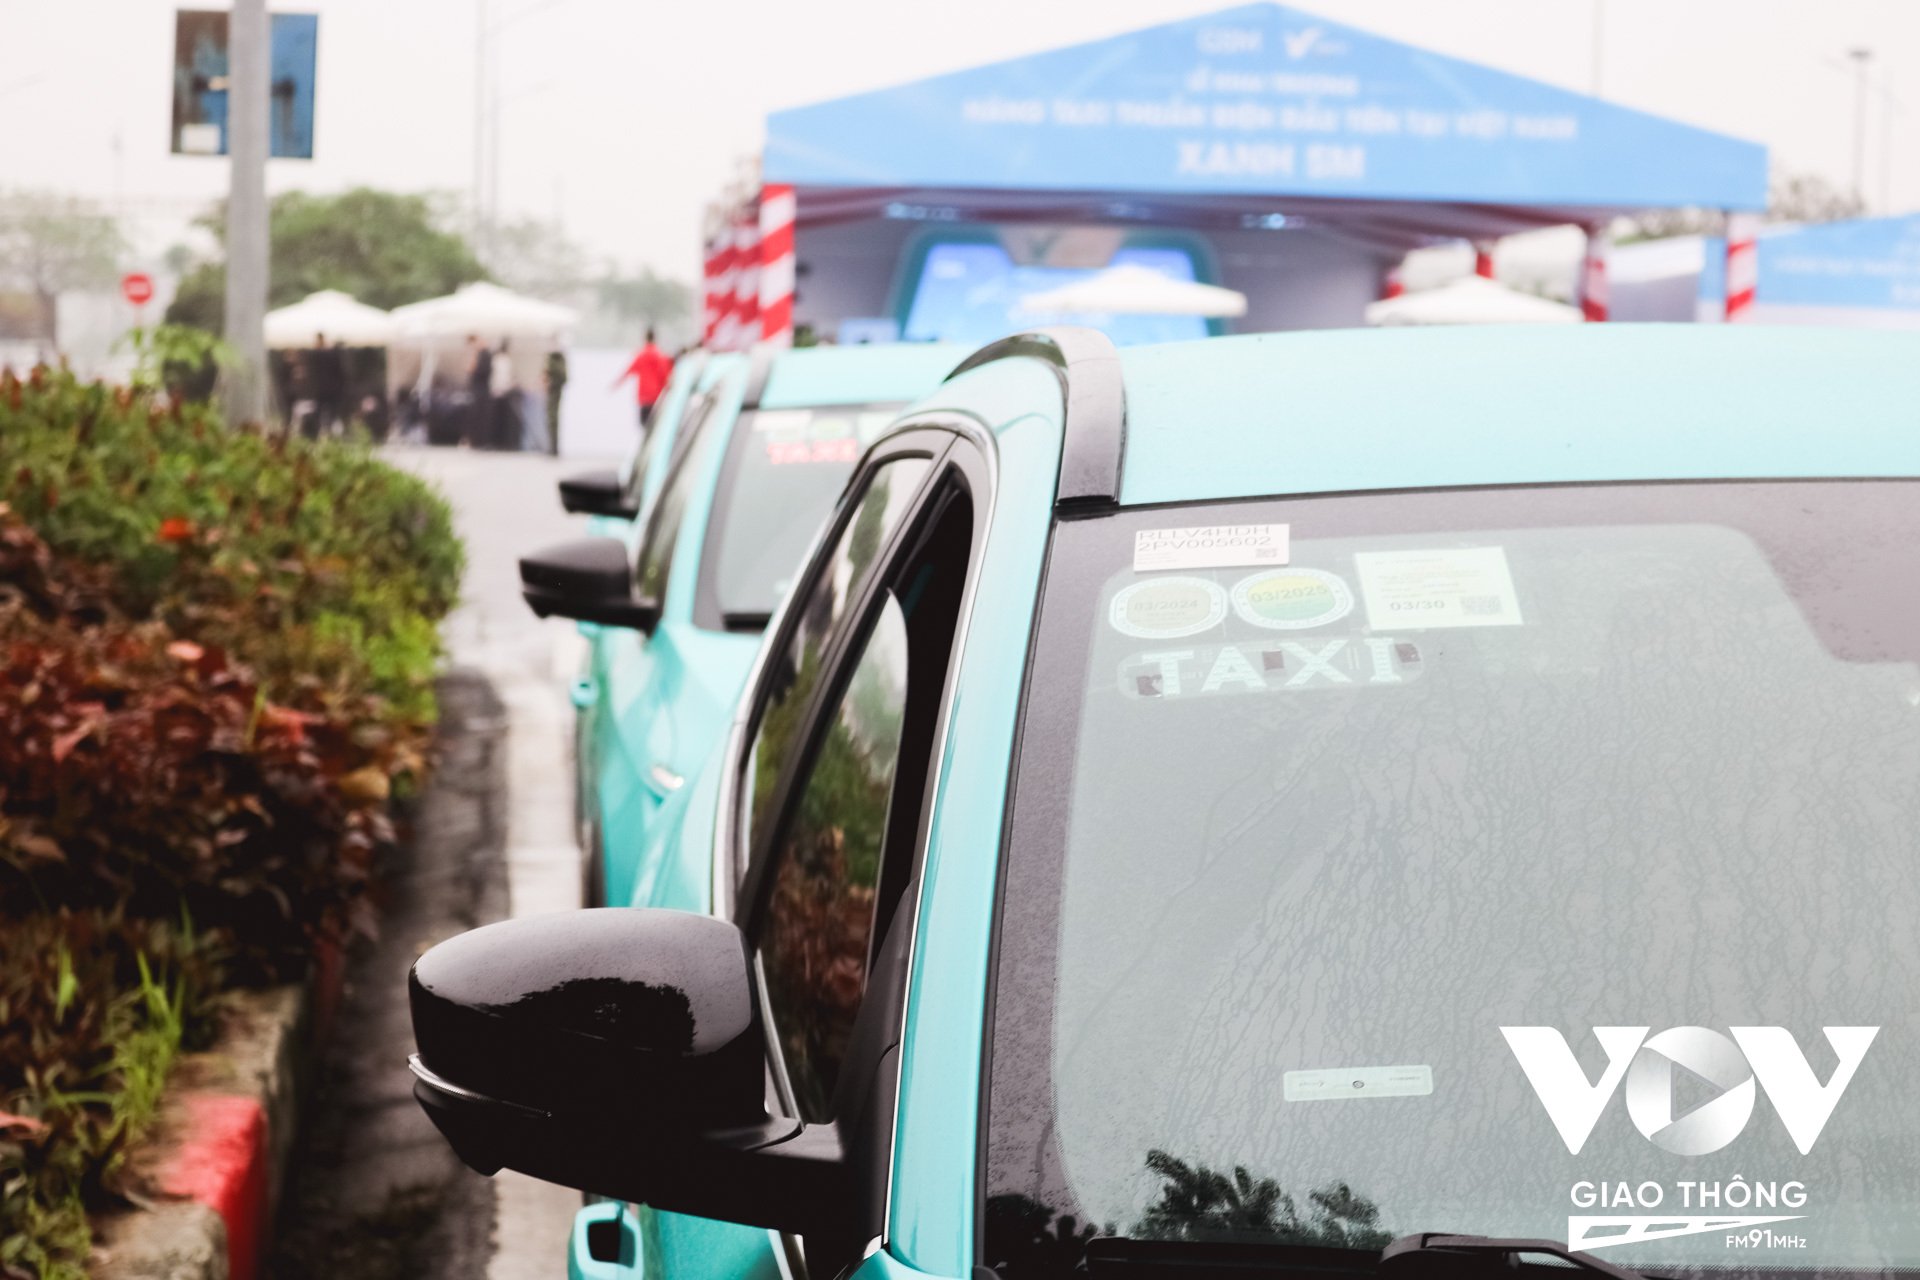 Với đội ngũ tài xế được đào tạo bài bản, chuyên nghiệp theo kim chỉ nam dịch vụ tận tâm, Taxi Xanh SM cam kết sẽ mang đến chất lượng dịch vụ 5 sao cho người dùng.